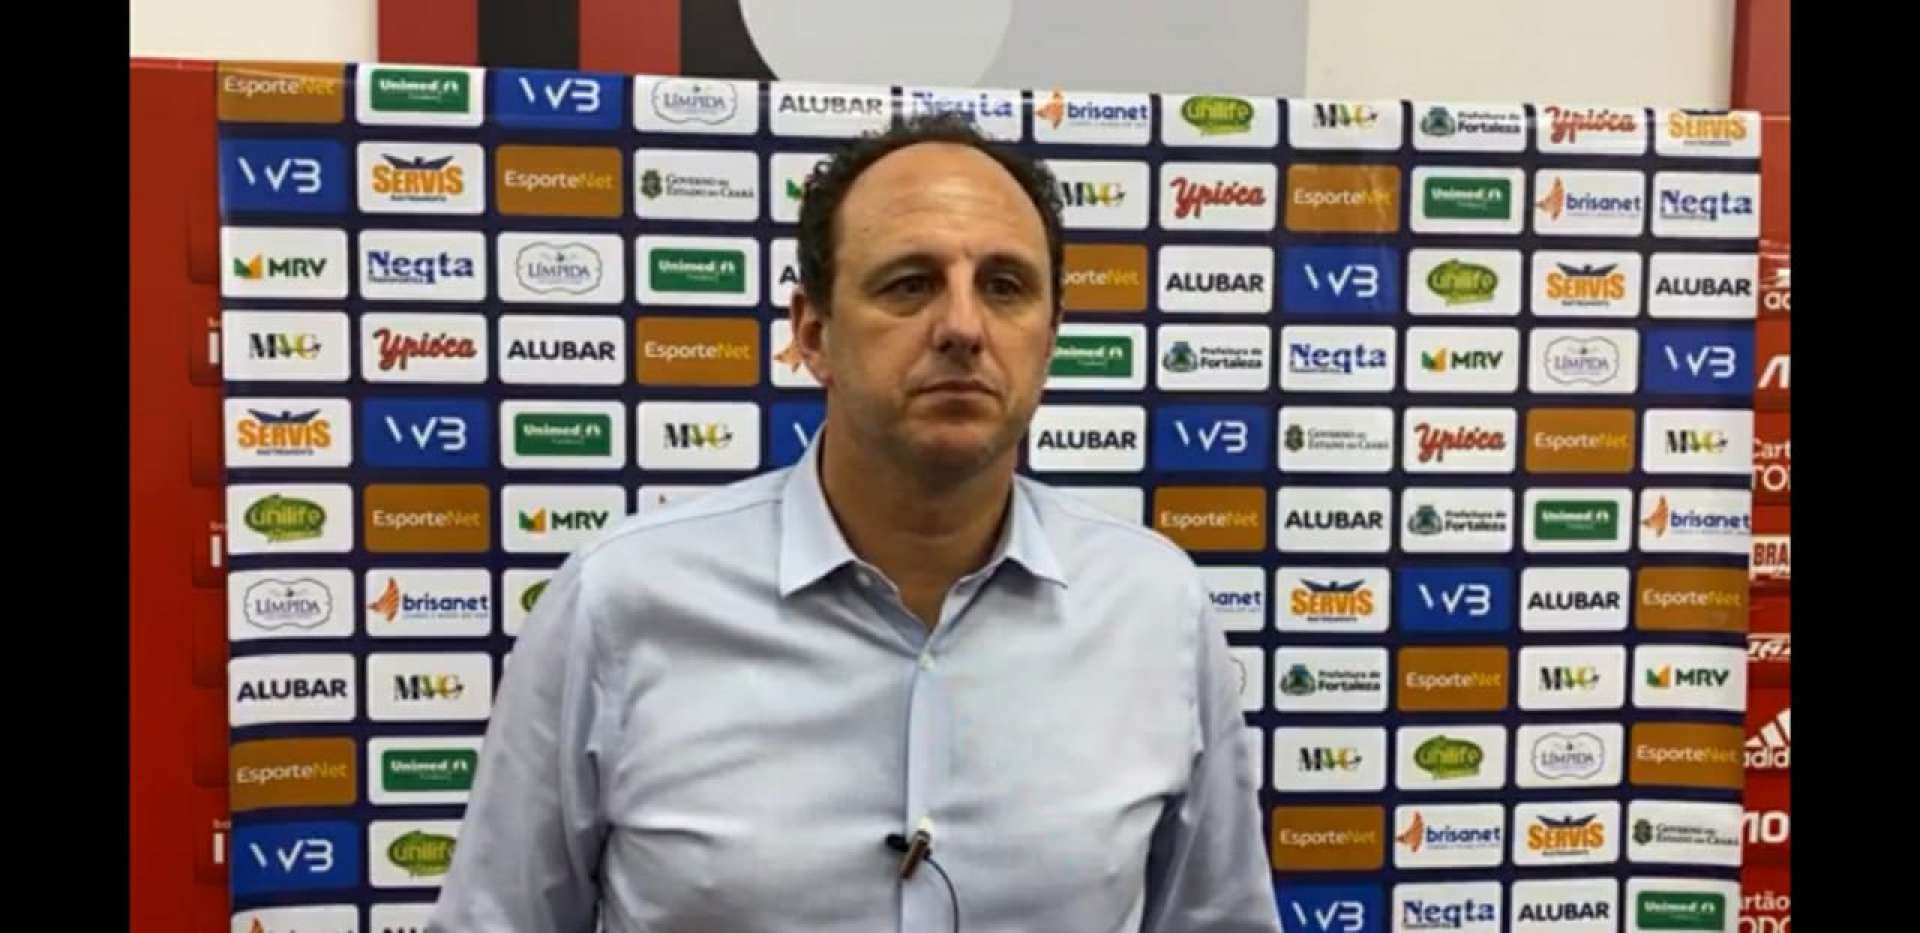 Rogério Ceni, treinador do Fortaleza (Foto: Reprodução/Leão TV)